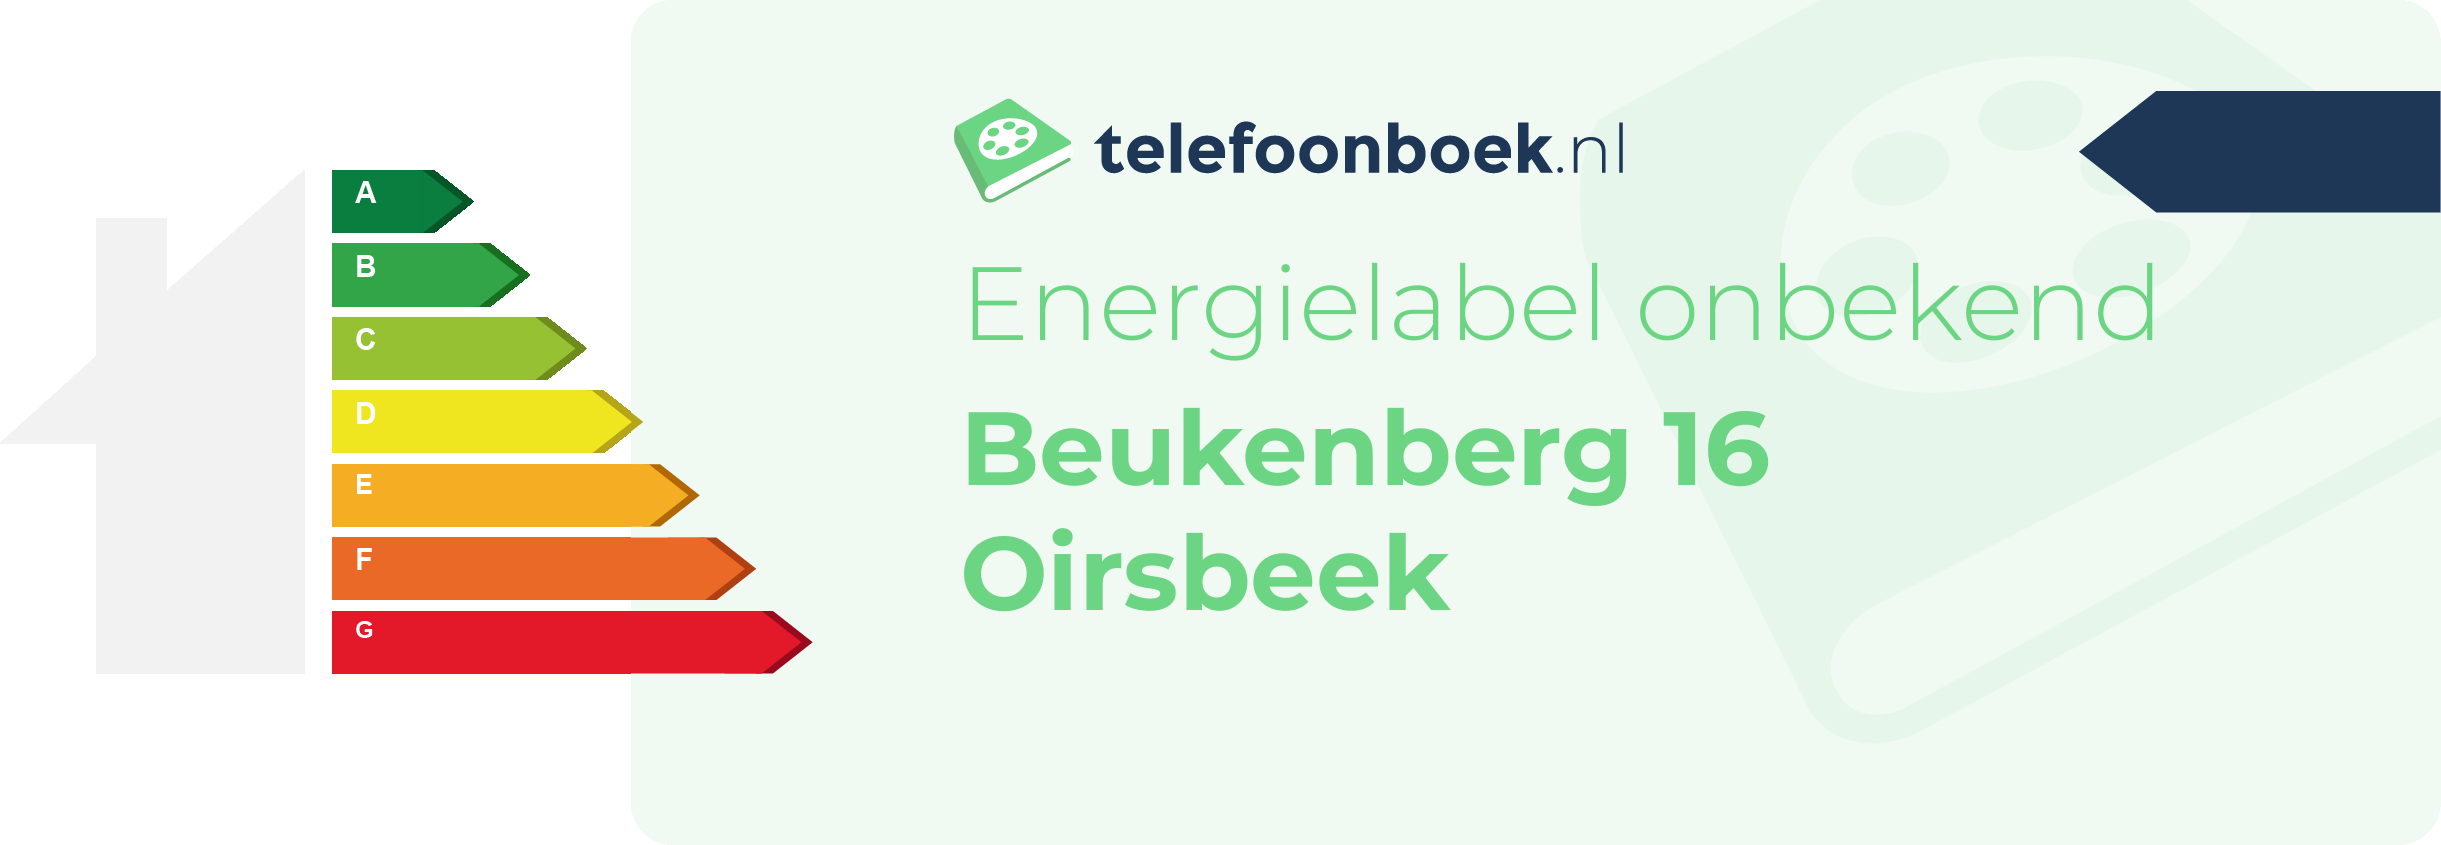 Energielabel Beukenberg 16 Oirsbeek